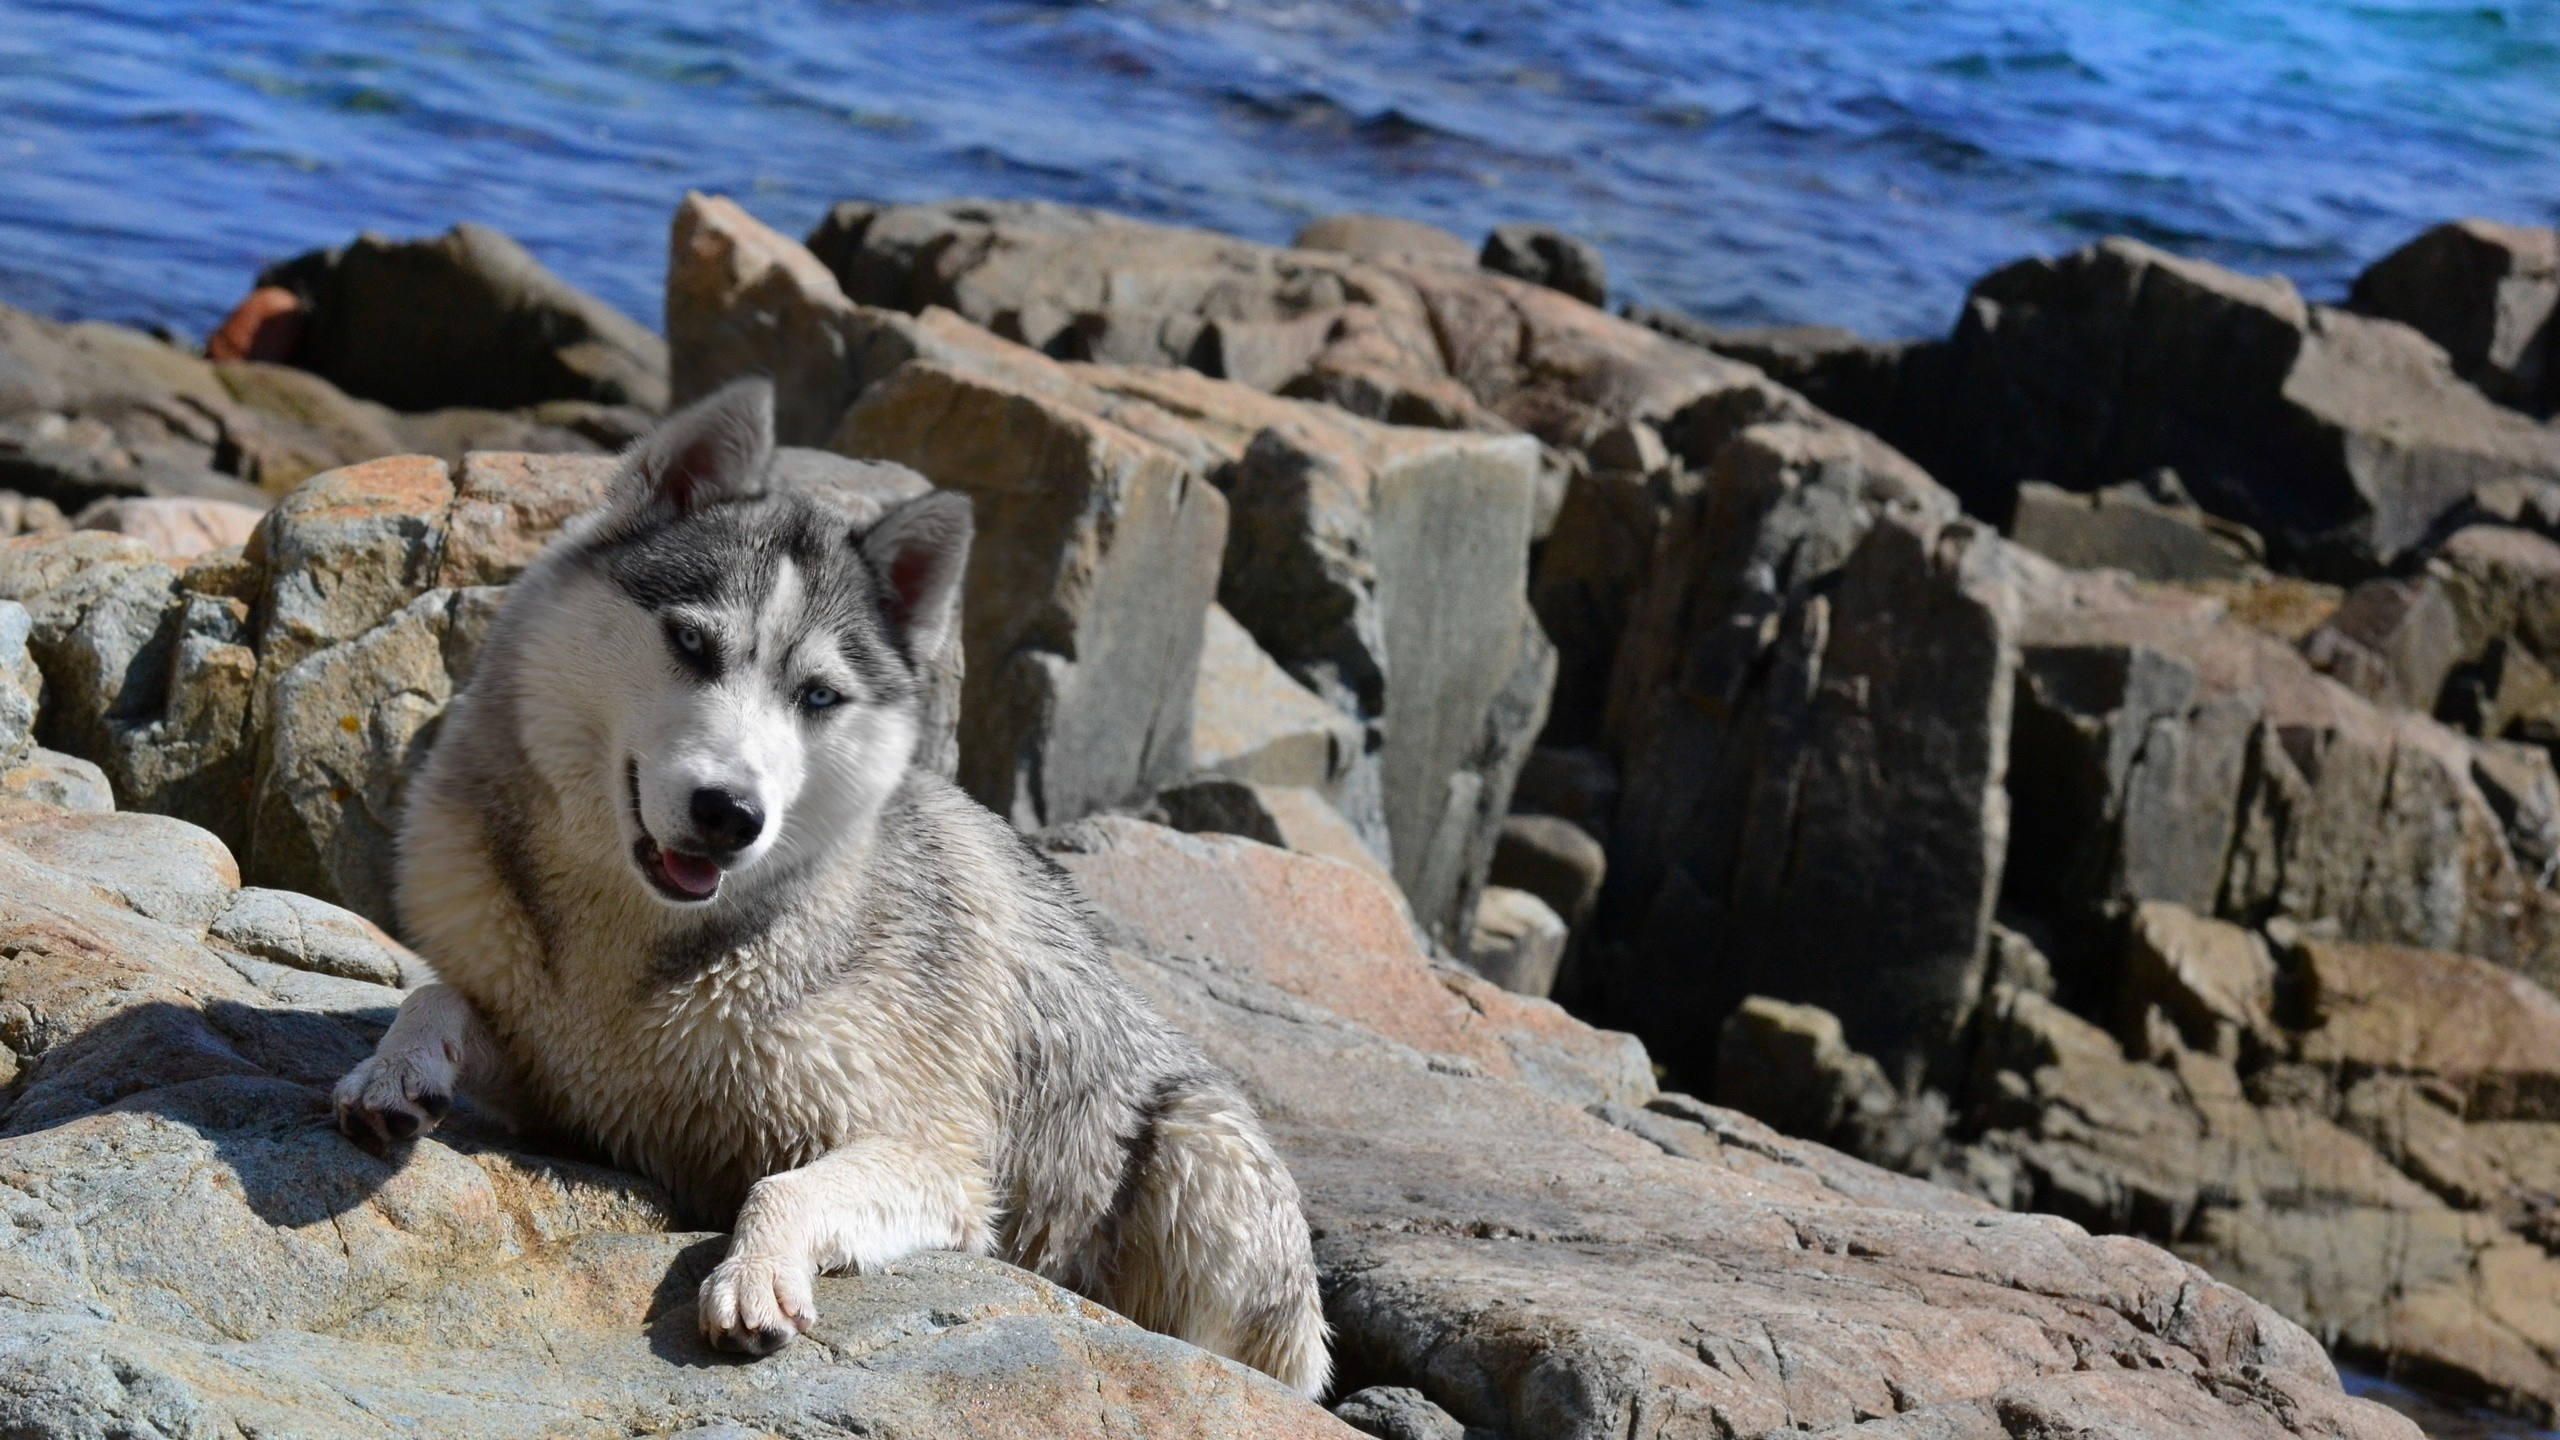 小狗, 品种的狗, 格陵兰的狗, Saarloos那只狼狗, 捷克斯洛伐克那只狼狗 壁纸 2560x1440 允许